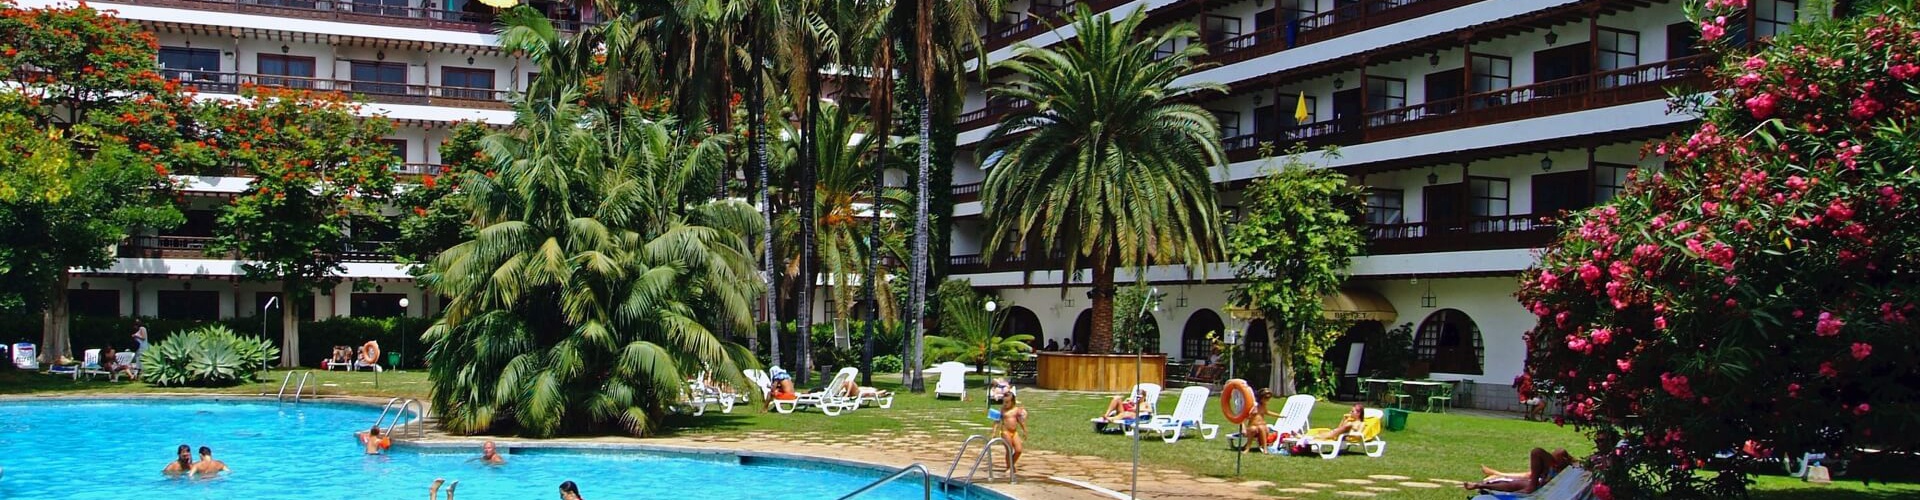 Coral Hotels - Puerto de la Cruz - 